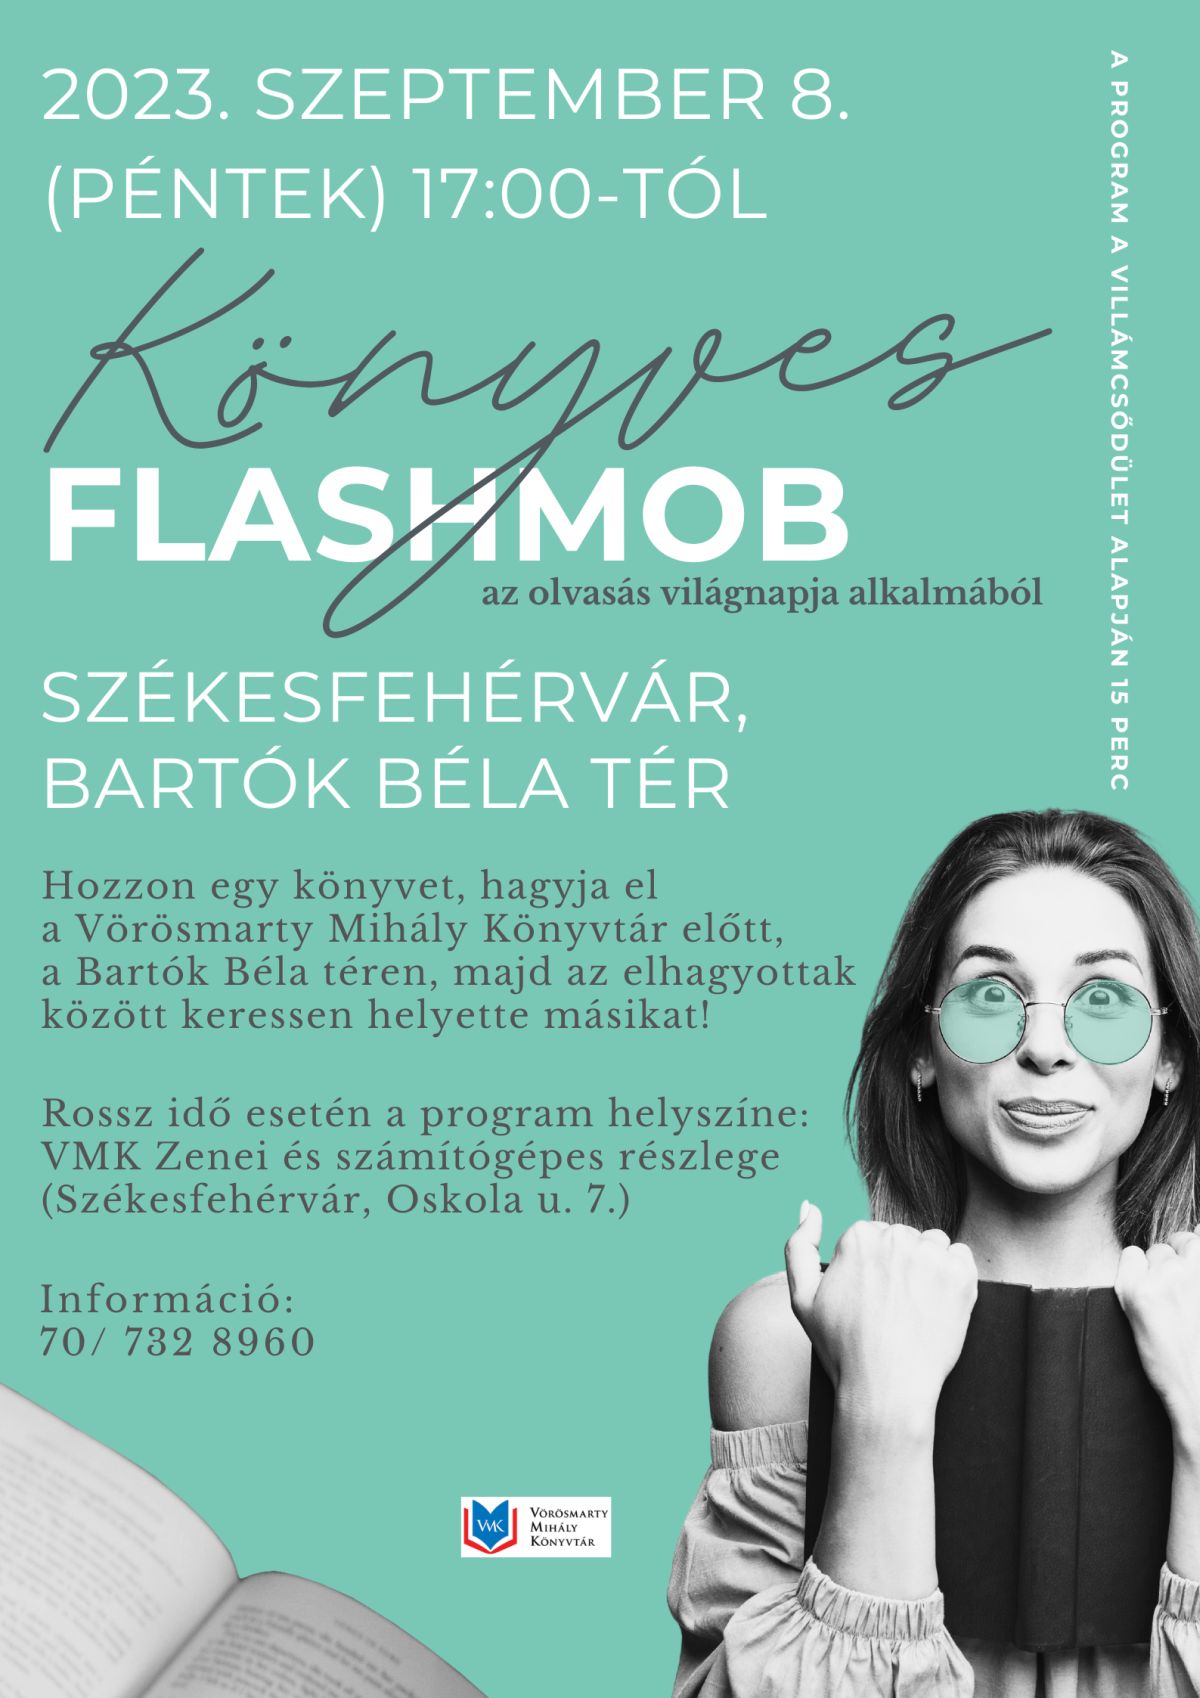 Könyves flashmobot rendeznek a Bartók Béla téren pénteken, az olvasás világnapján